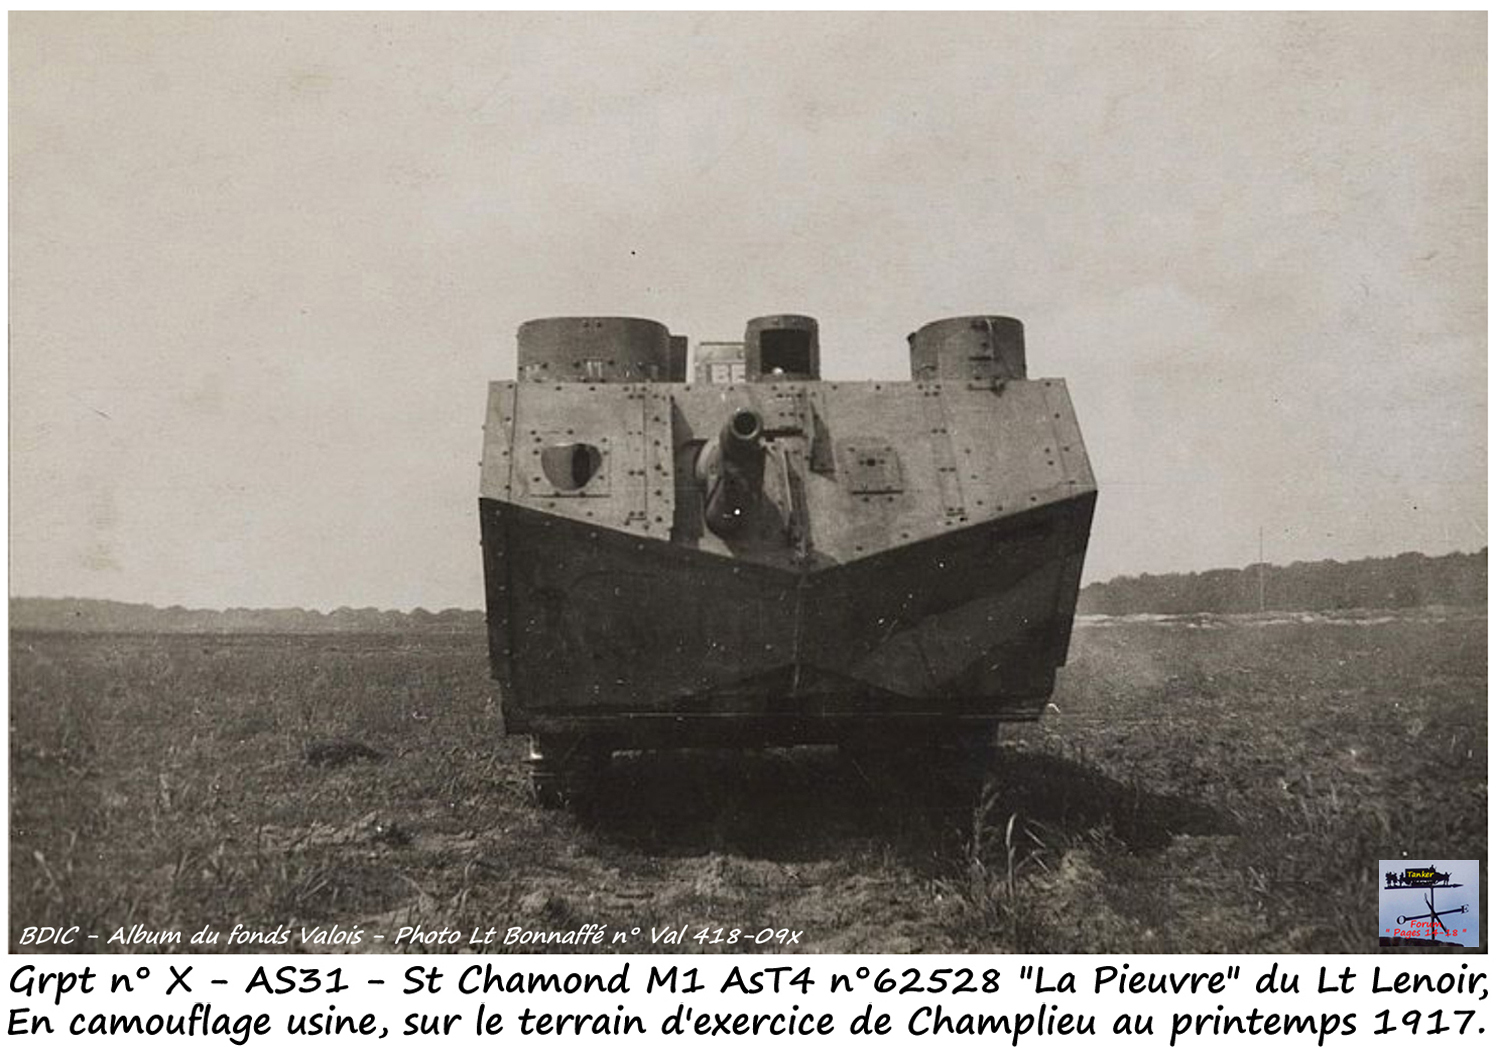 Grpt X - AS 31 - St Chamond M1 n° 62528 (06a).jpg